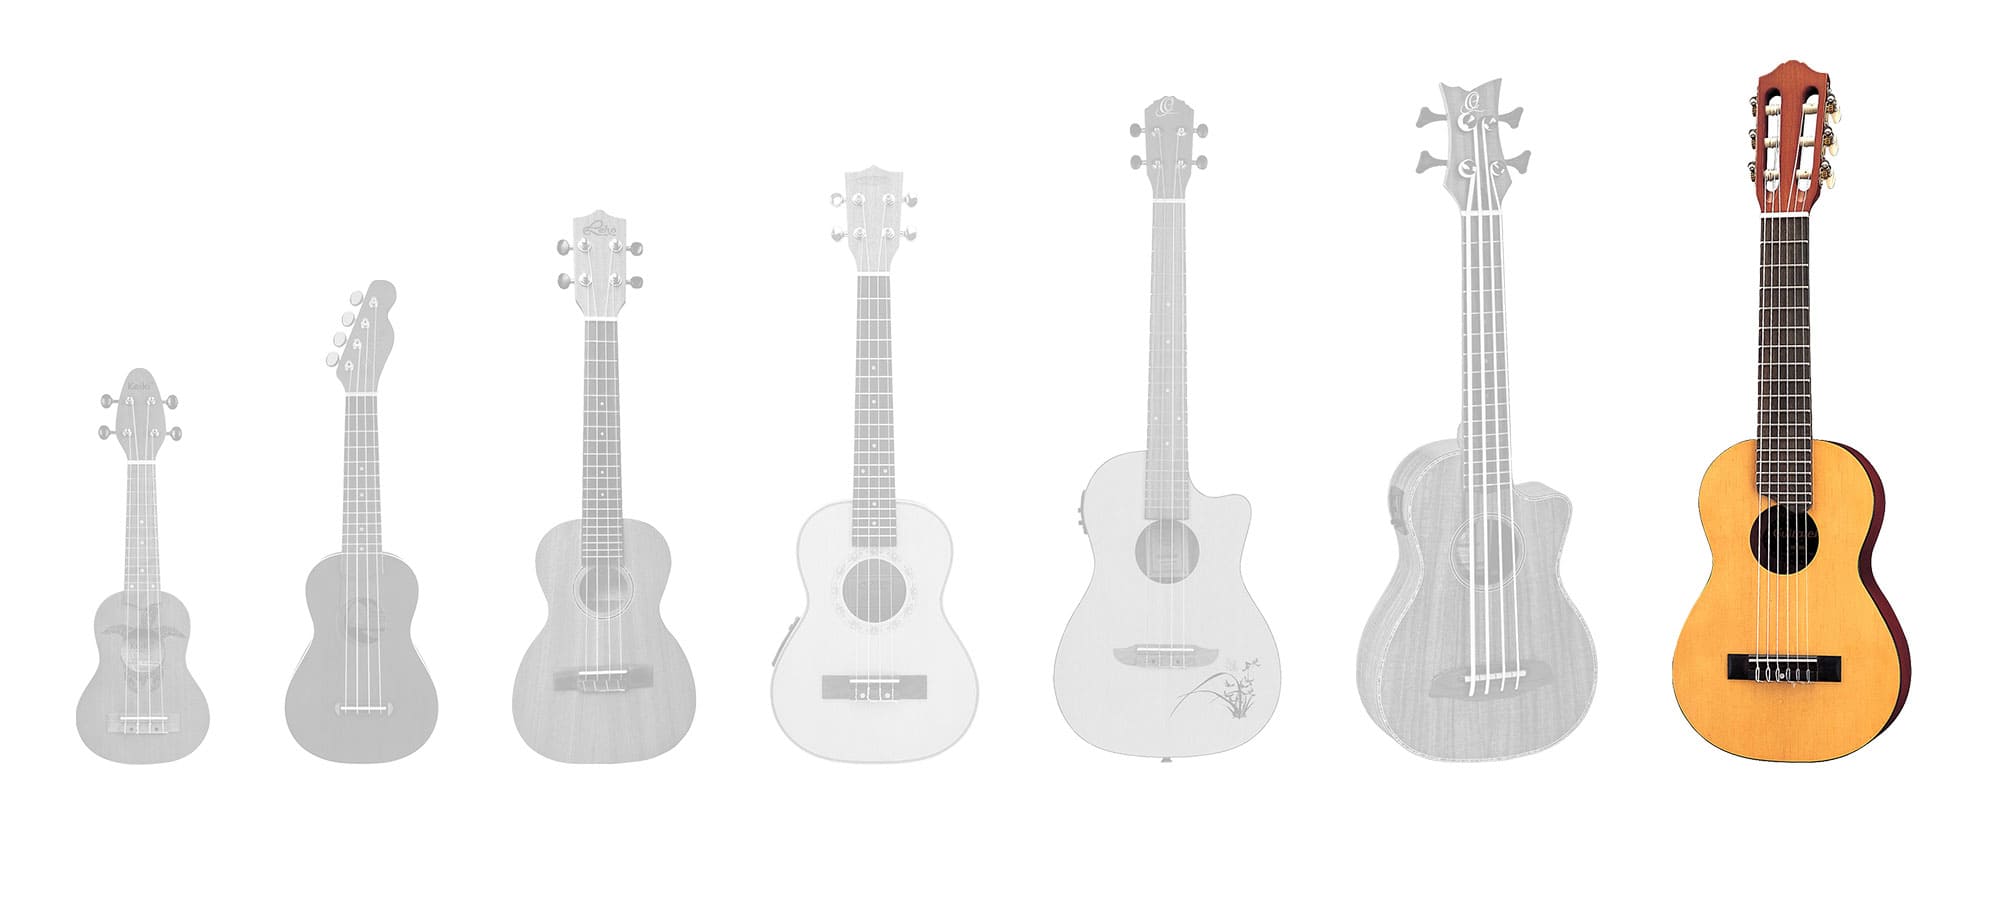 Die Guitarlele im Vergleich zu verschiedenen Ukulelen-Größen